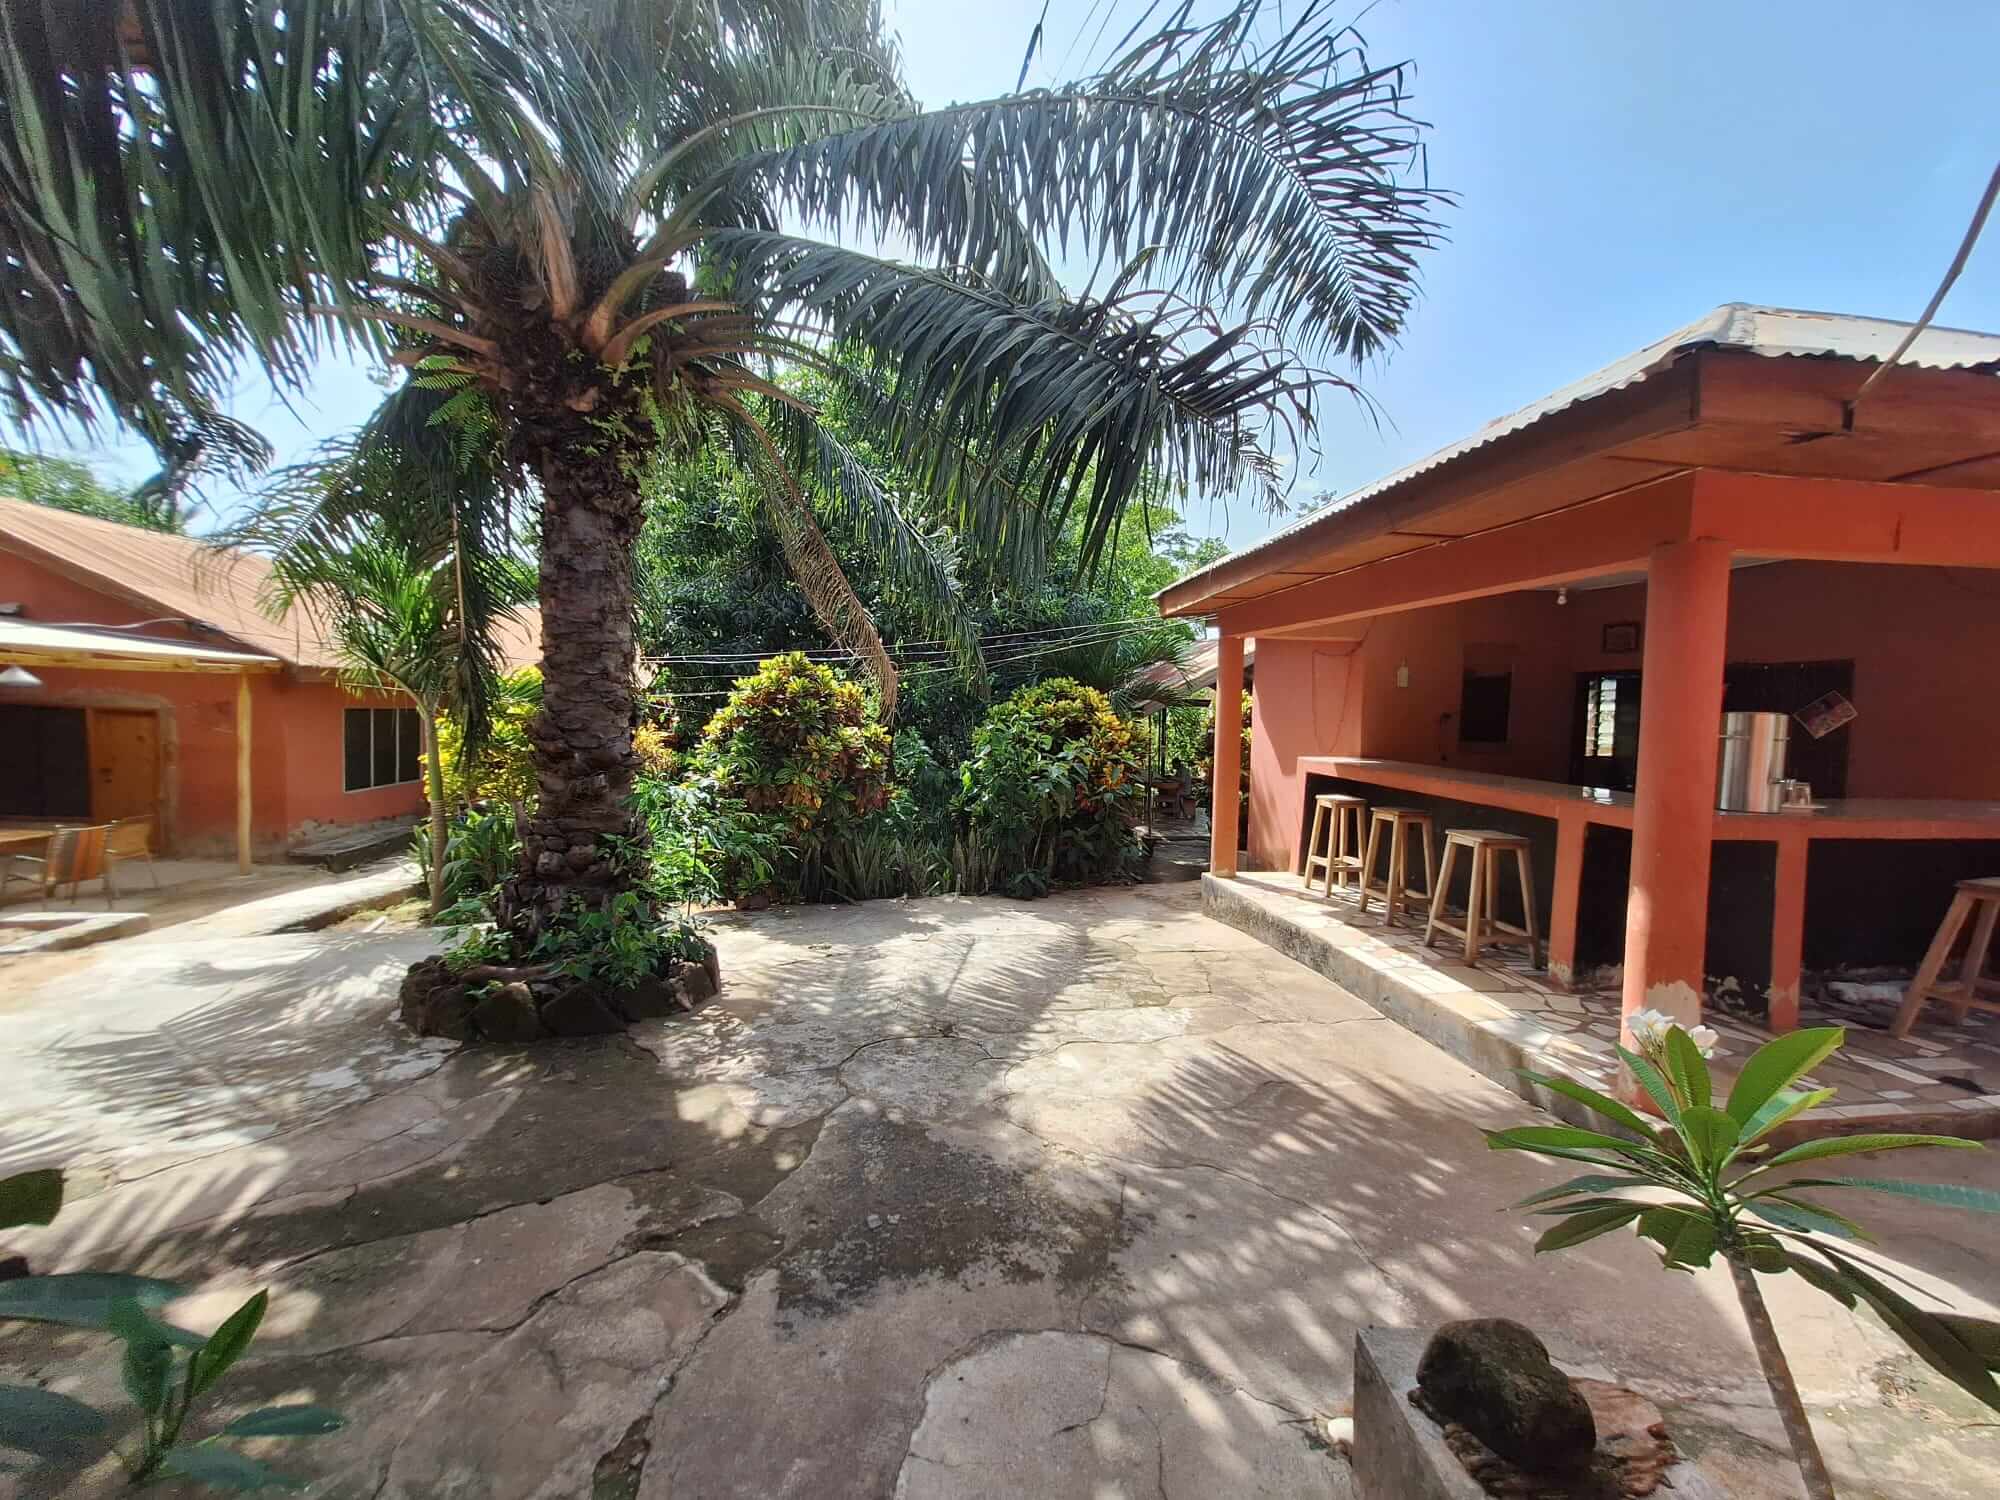 overzichtsfoto van onze tuin, bar en terras van onze gezellige lodge in Ghana